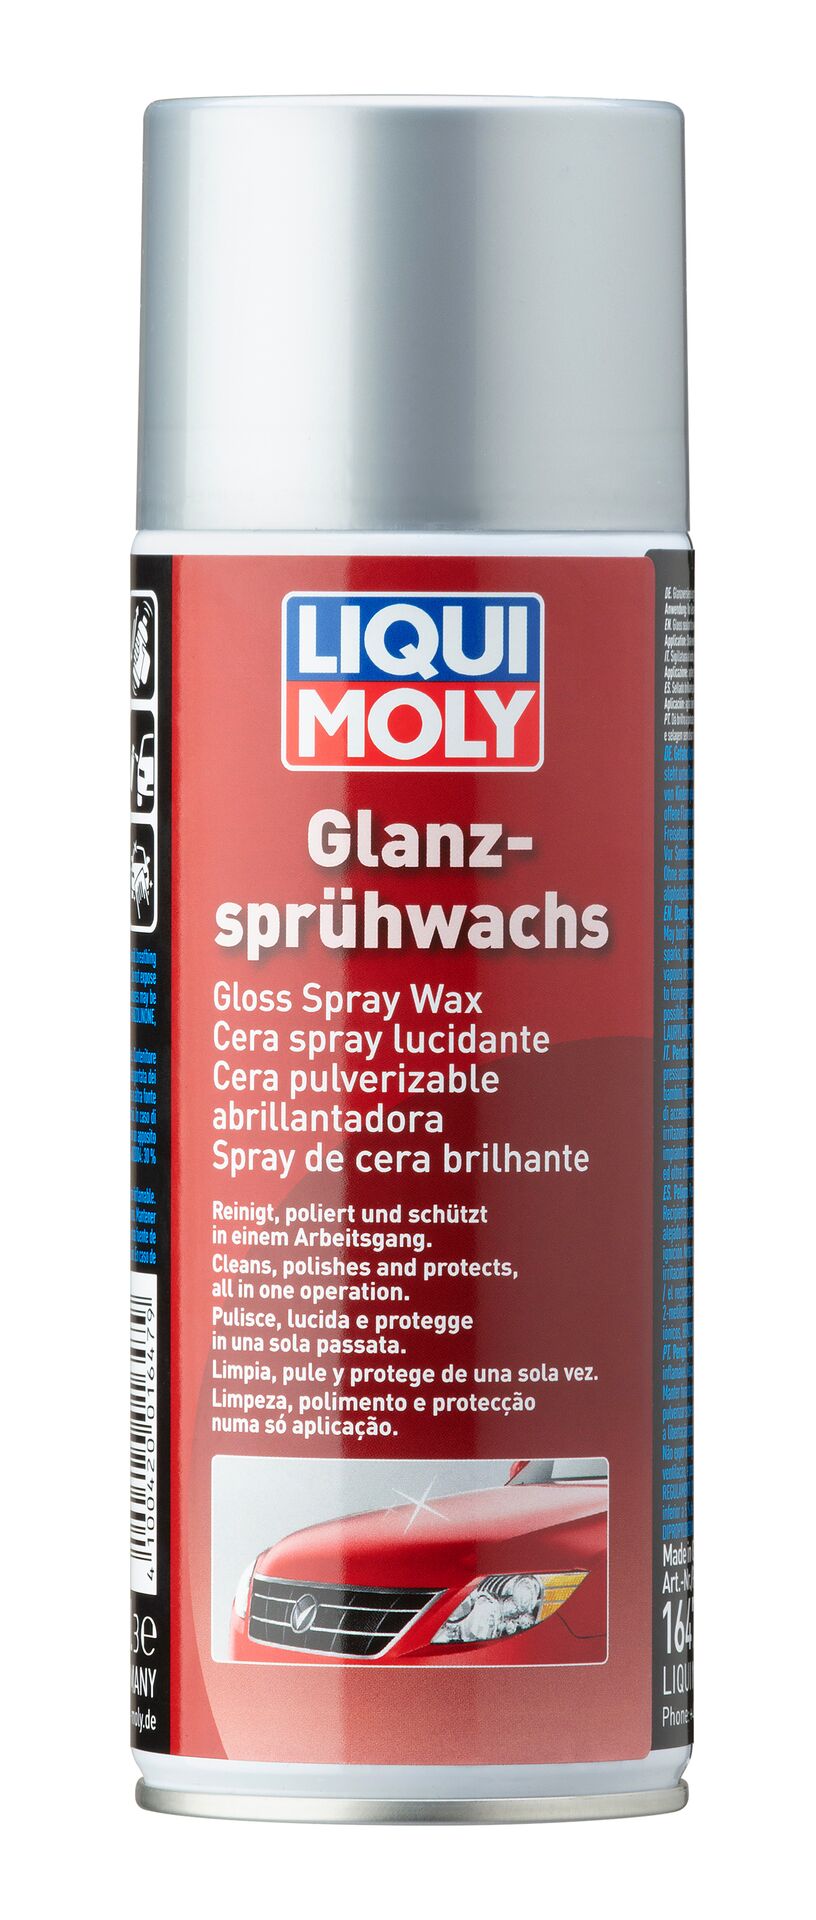 Liqui Moly Glanz Sprühwachs Lackpflege Politur Autowachs Gloss Spray Wax 400 ml